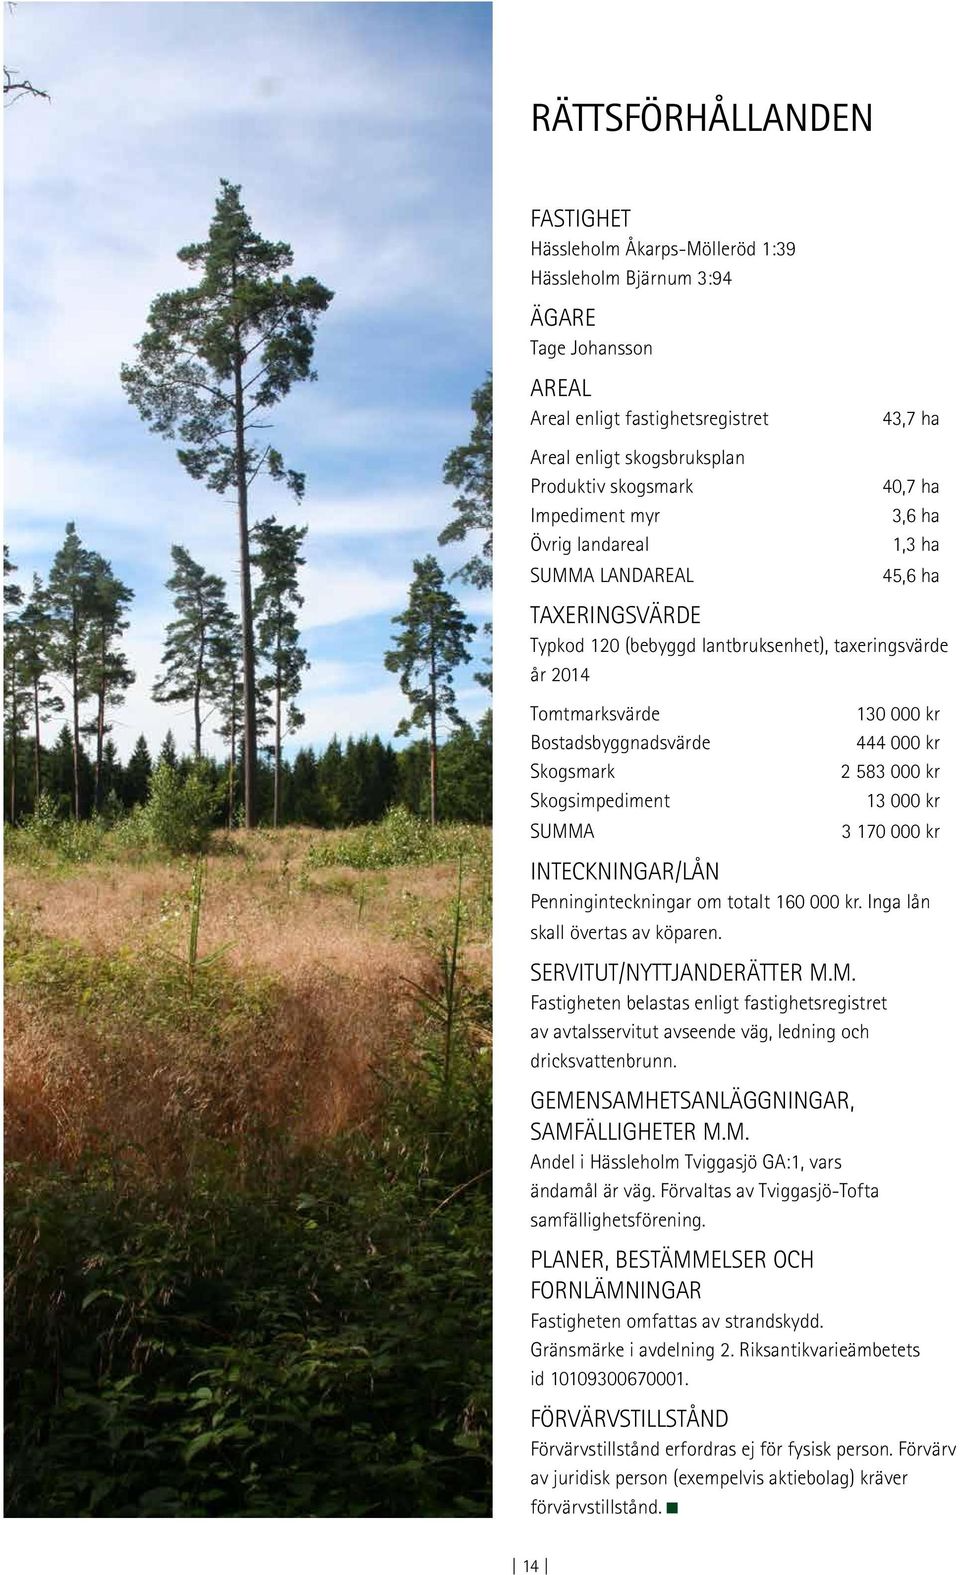 Bostadsbyggnadsvärde 444 000 kr Skogsmark 2 583 000 kr Skogsimpediment 13 000 kr SUMMA 3 170 000 kr INTECKNINGAR/LÅN Penninginteckningar om totalt 160 000 kr. Inga lån skall övertas av köparen.